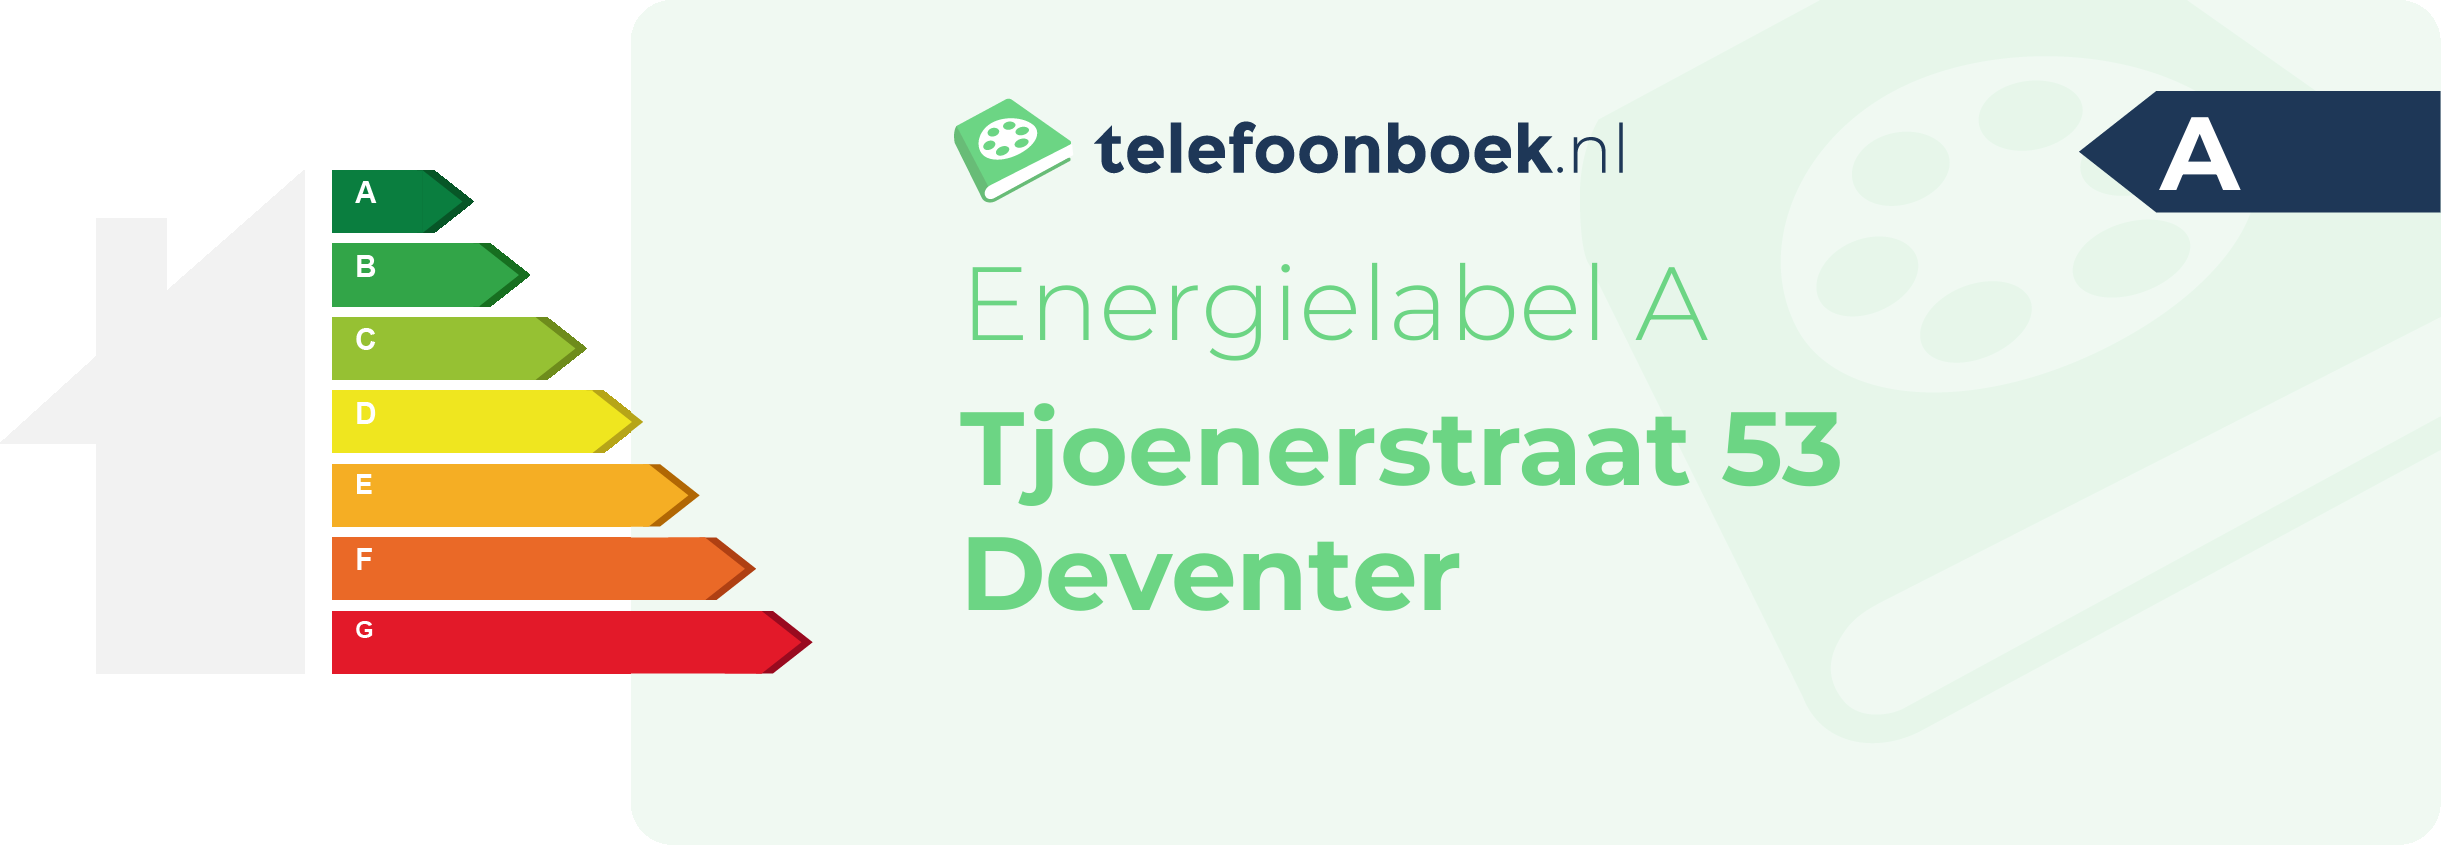 Energielabel Tjoenerstraat 53 Deventer